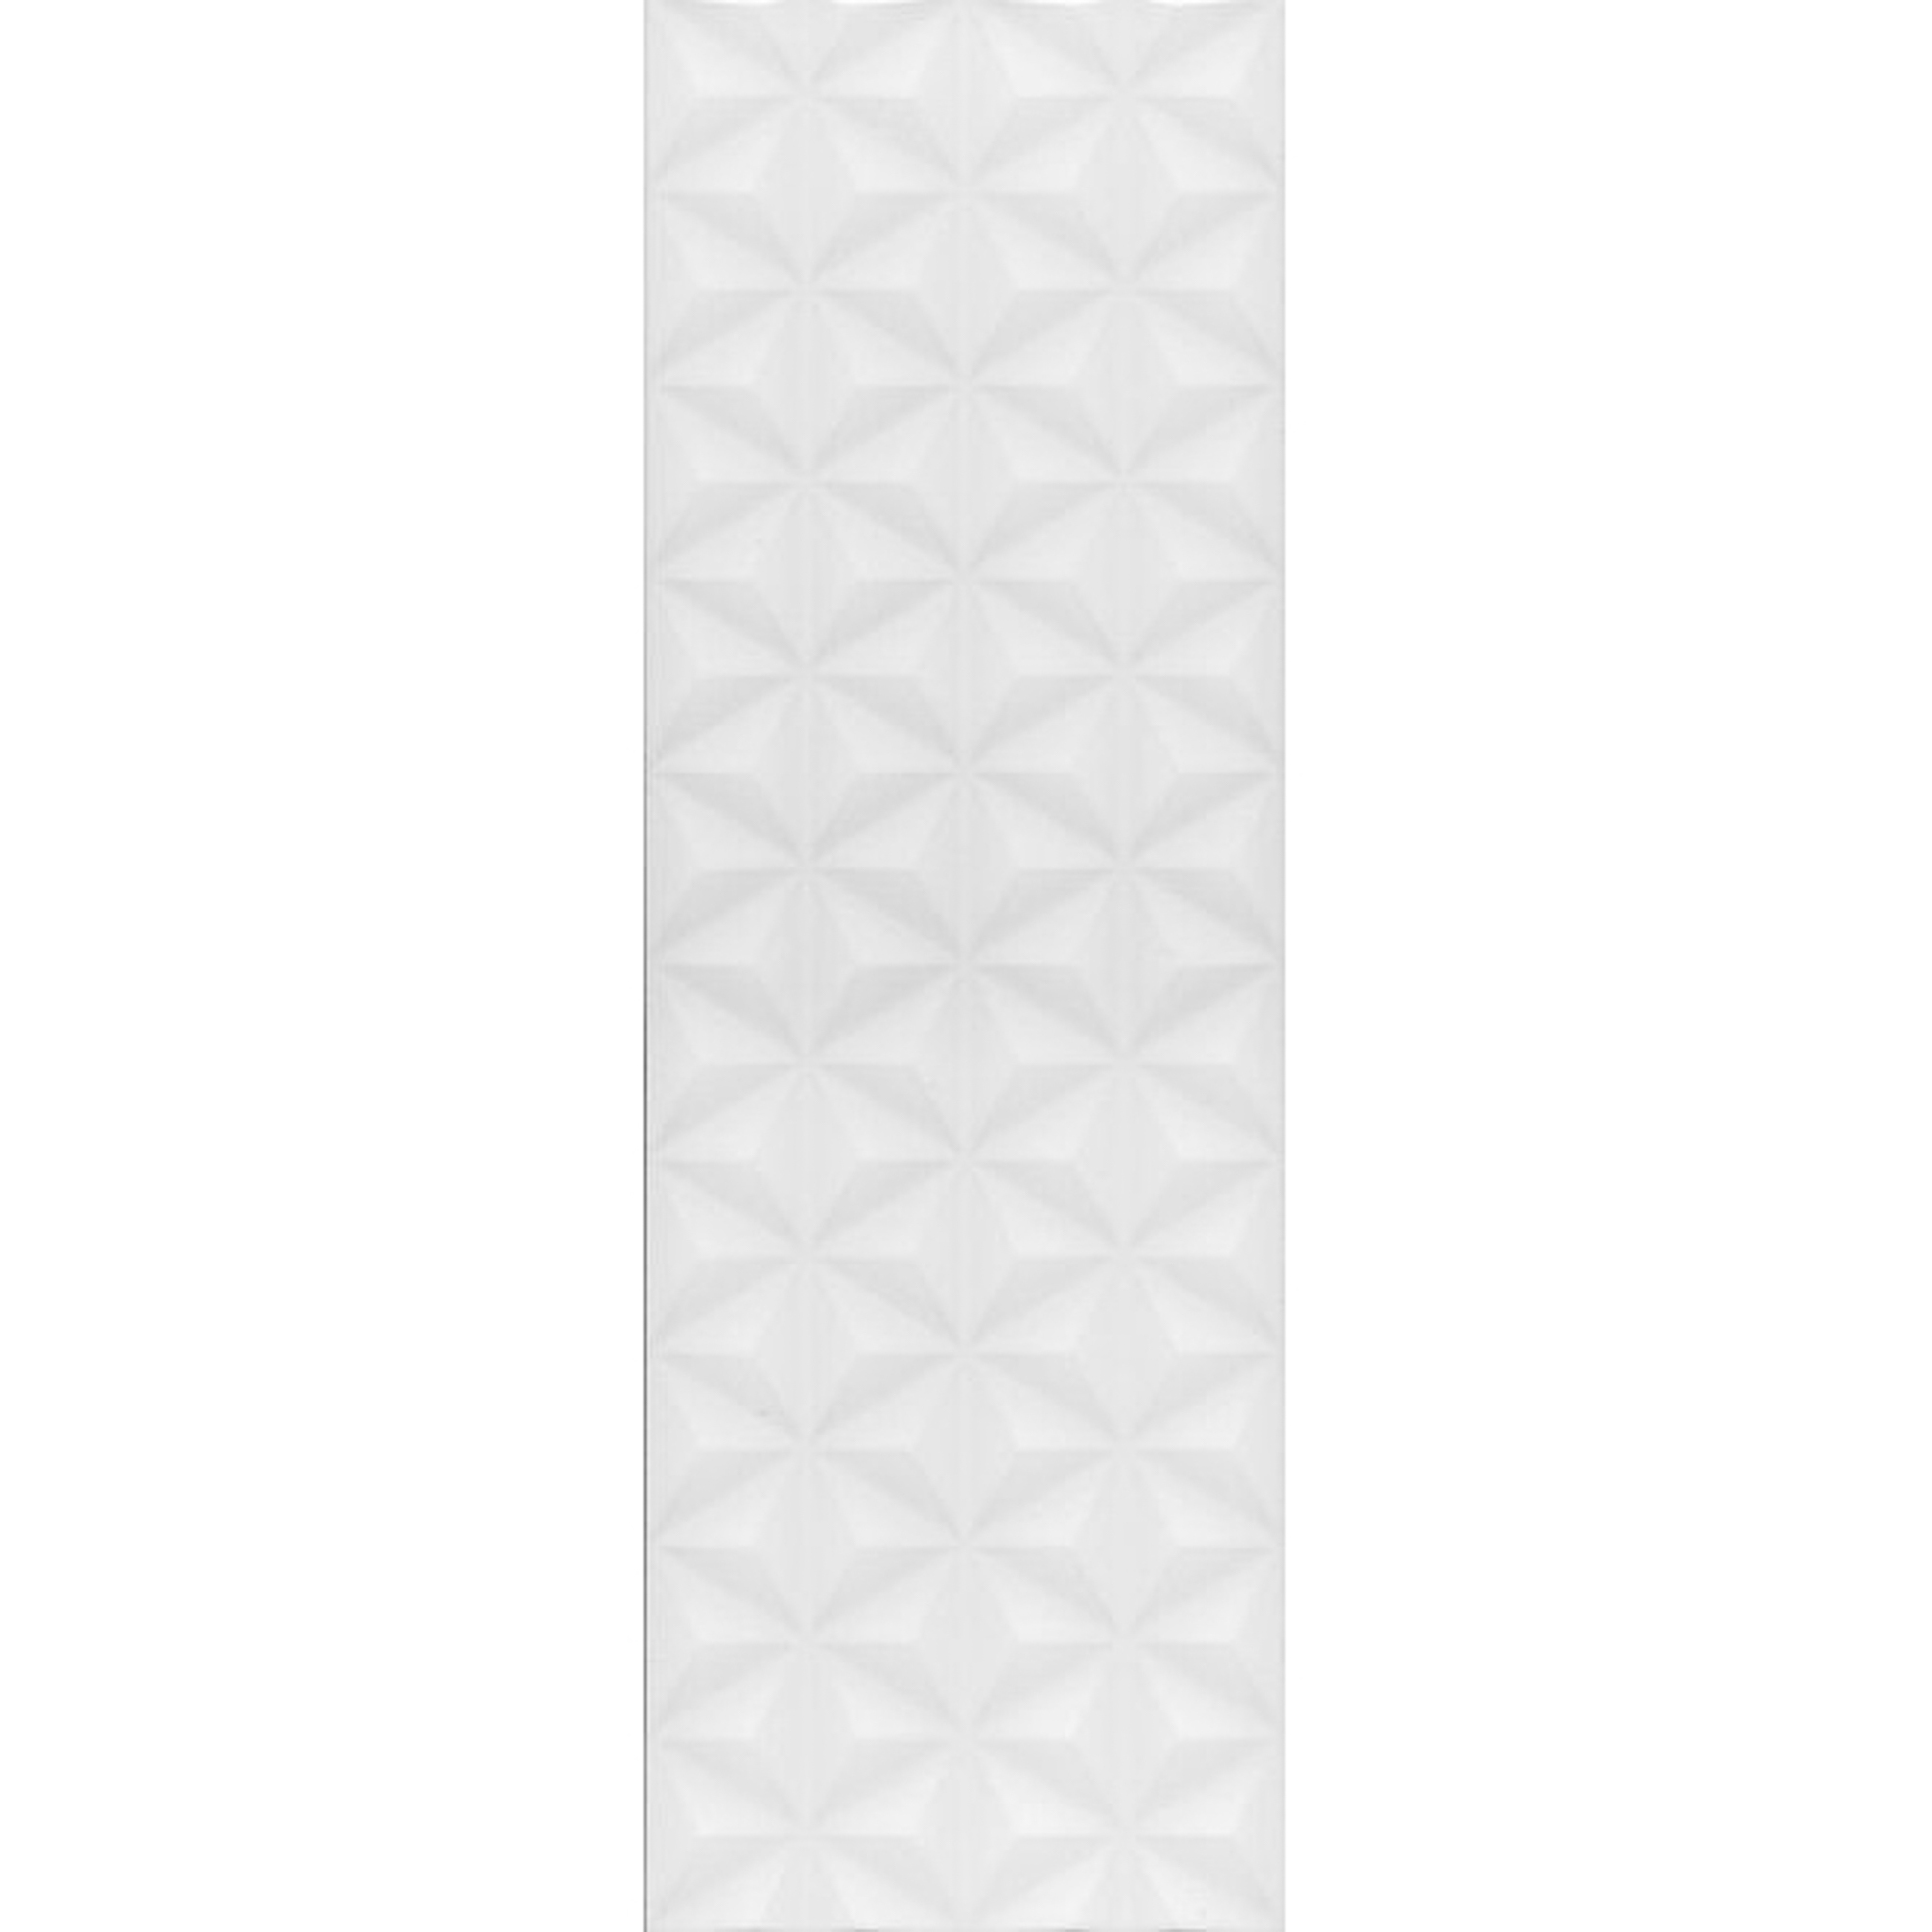 Плитка Kerama Marazzi Диагональ белая структура 25x75 см 12119R плитка облицовочная нефрит террацио белая с крошкой 600x200x9 мм 10 шт 1 2 кв м